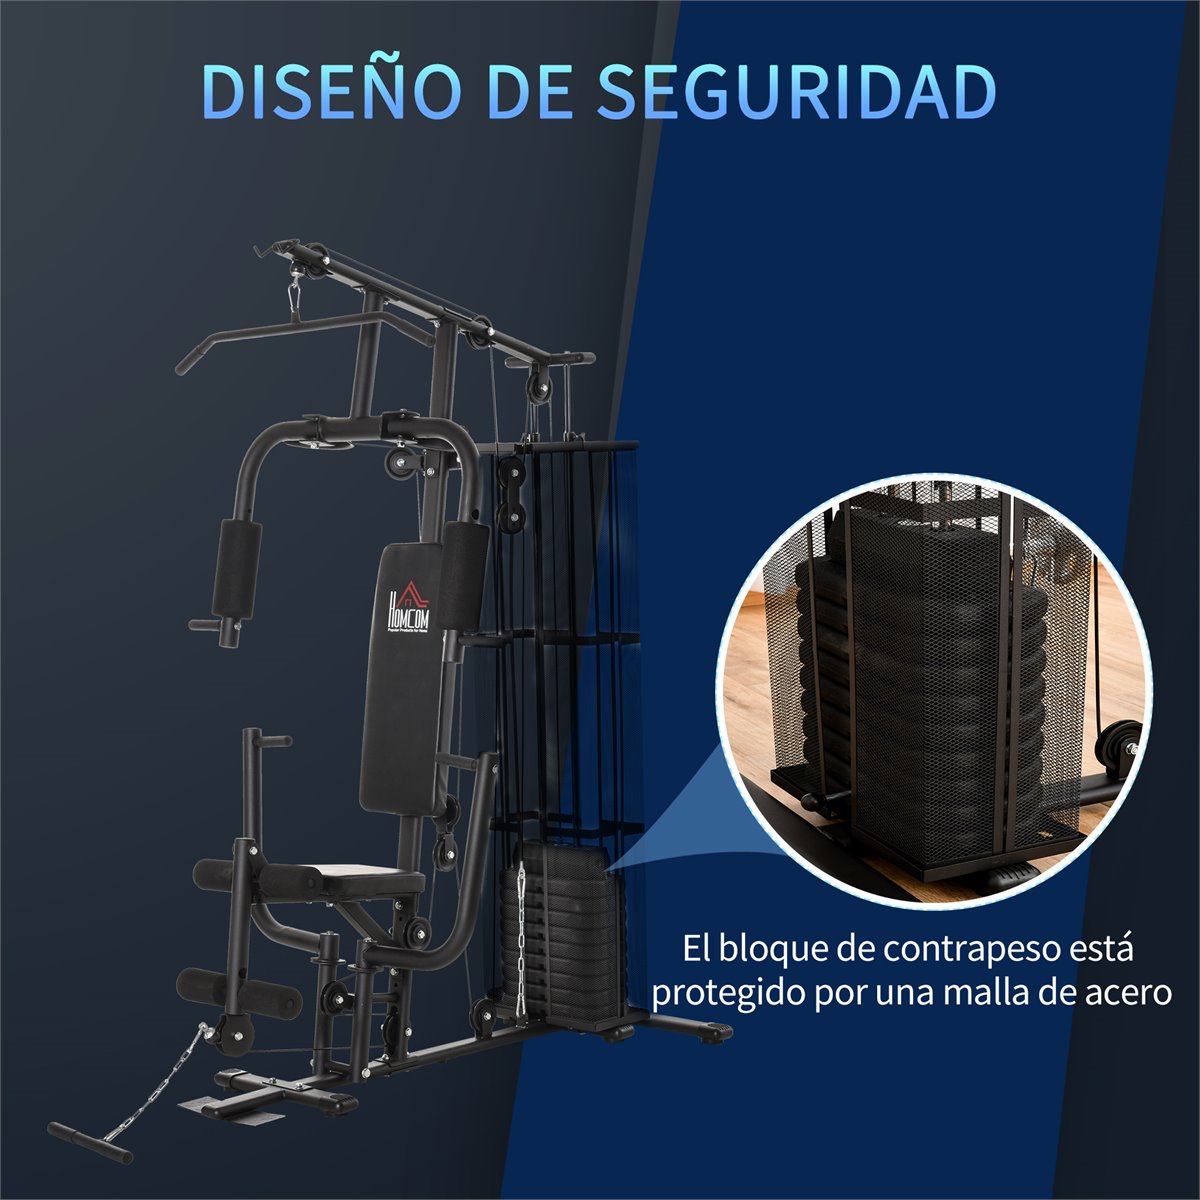 SPORTNOW Máquina de Multiestación Ajustable Multiestación de Musculación  con Placas de Peso de 45 kg Carga